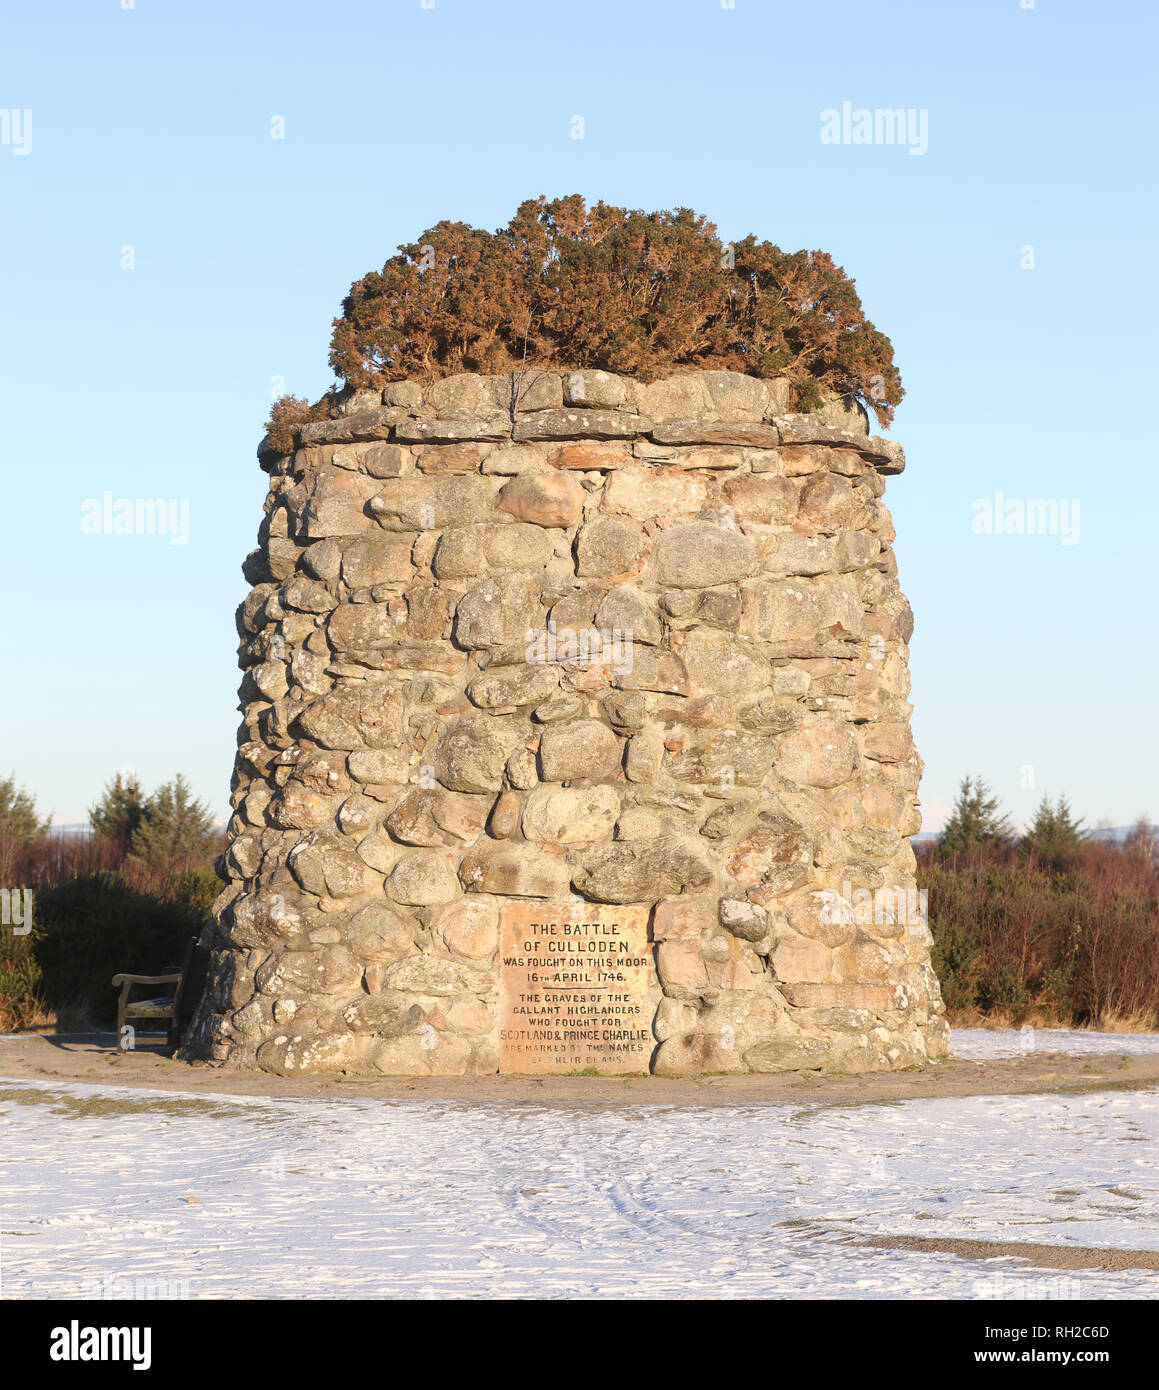 31. Januar 2019: das Schlachtfeld von Culloden memorial Cairn. Bild: Andrew Smith Stockfoto